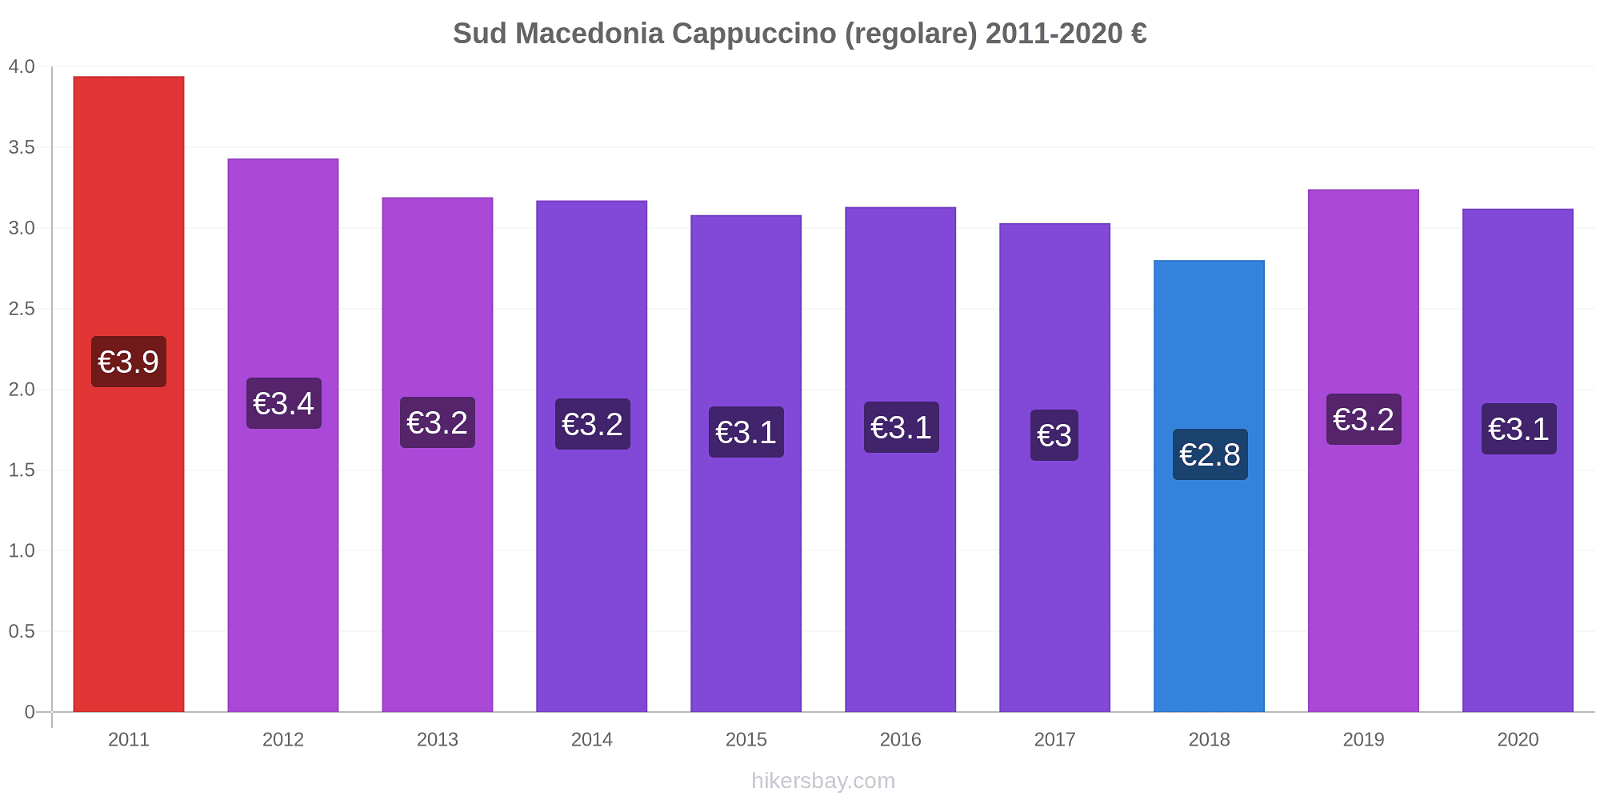 Sud Macedonia variazioni di prezzo Cappuccino (normale) hikersbay.com